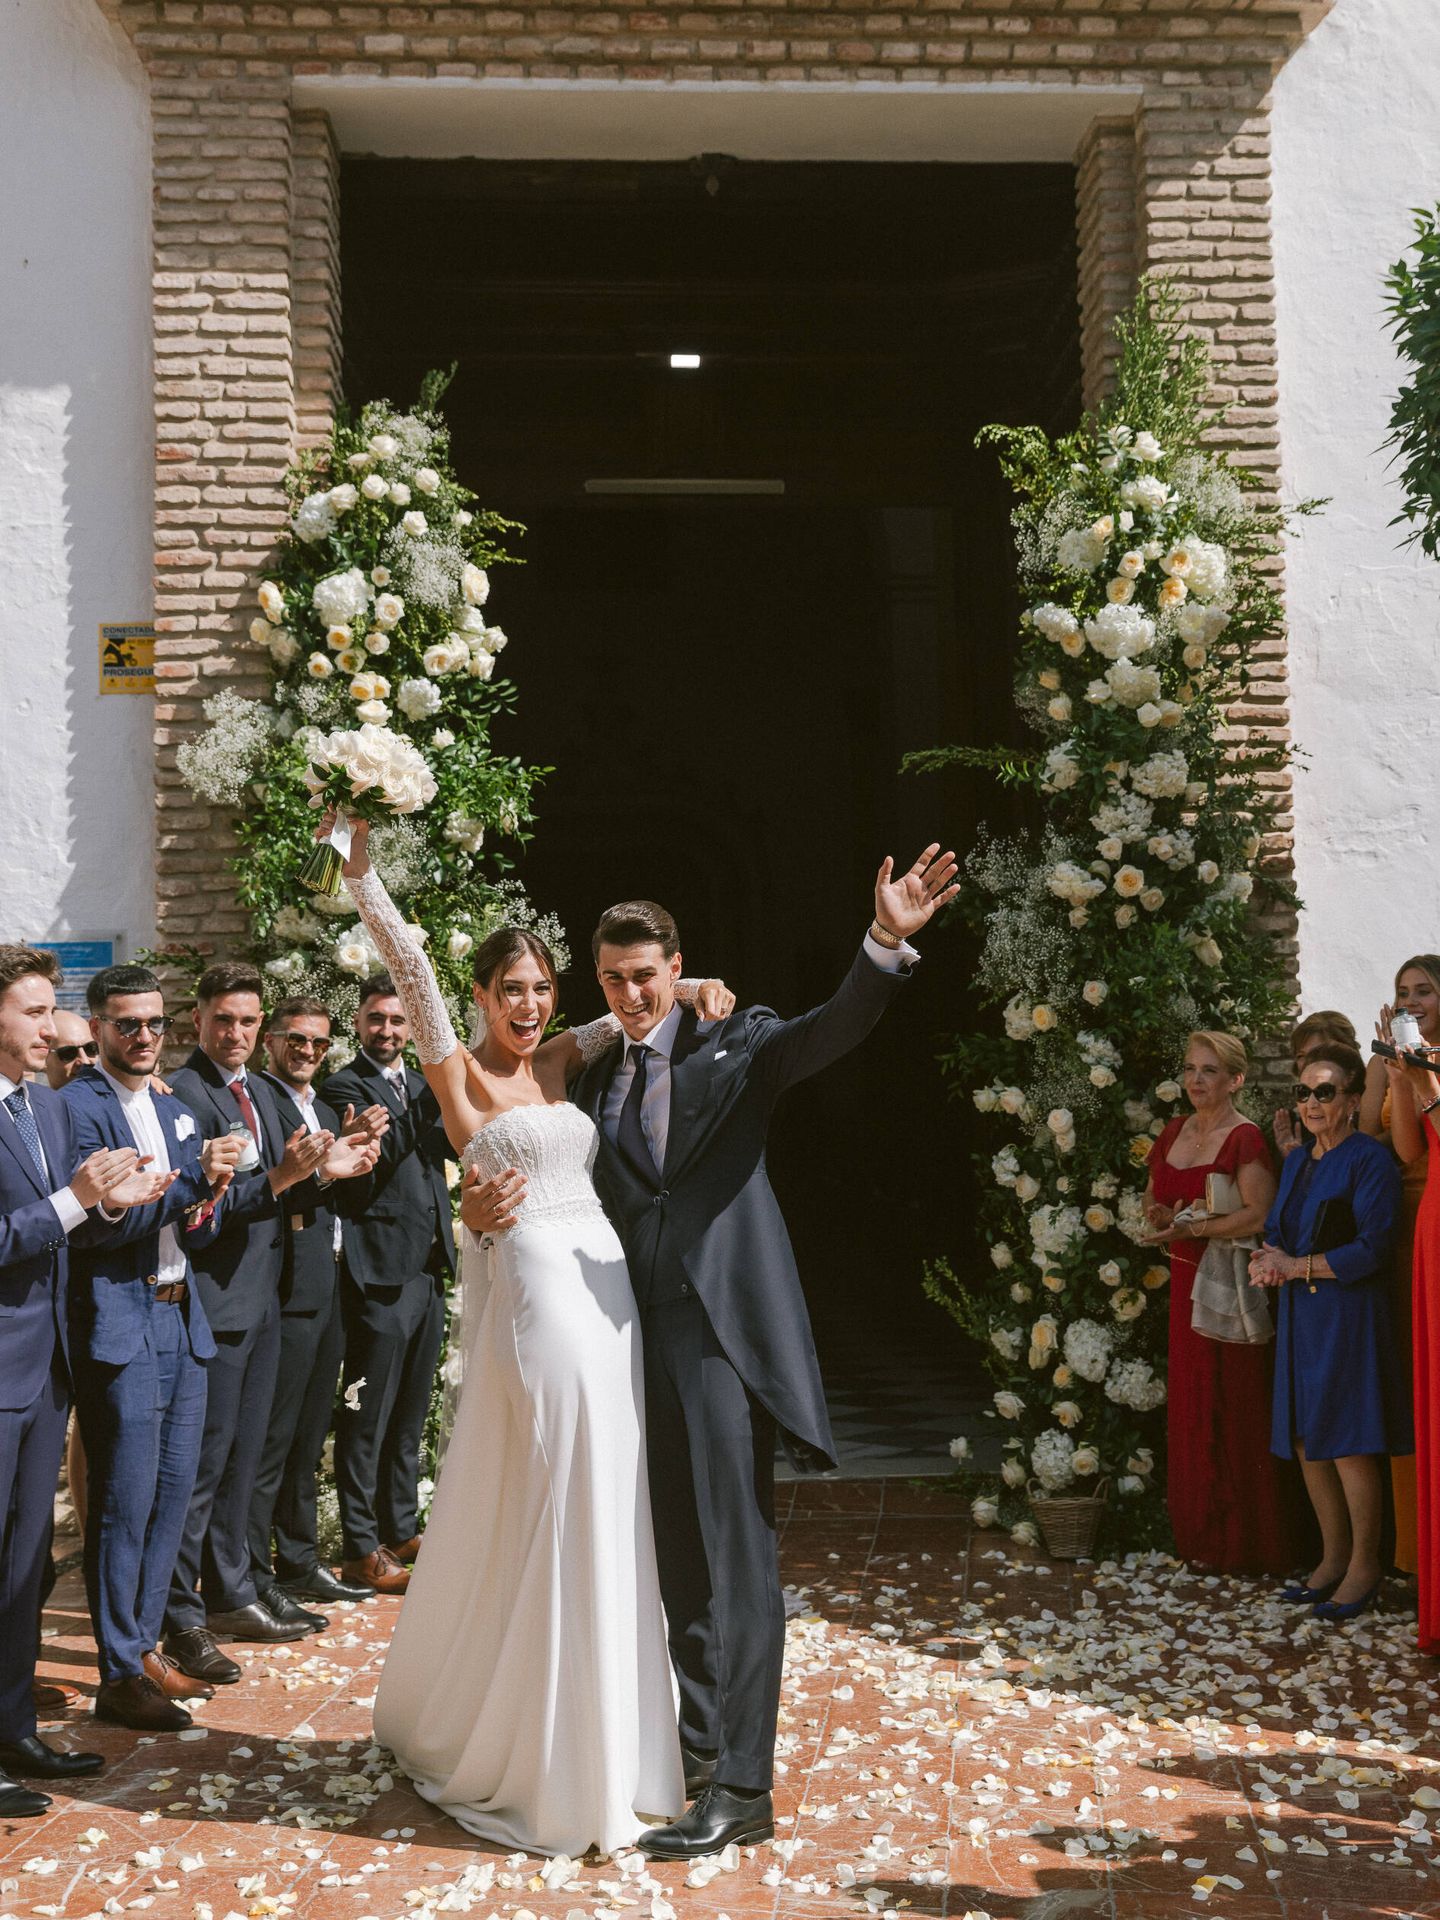 La boda de Kepa Arrizabalaga y Andrea Martínez. (Volvoreta)